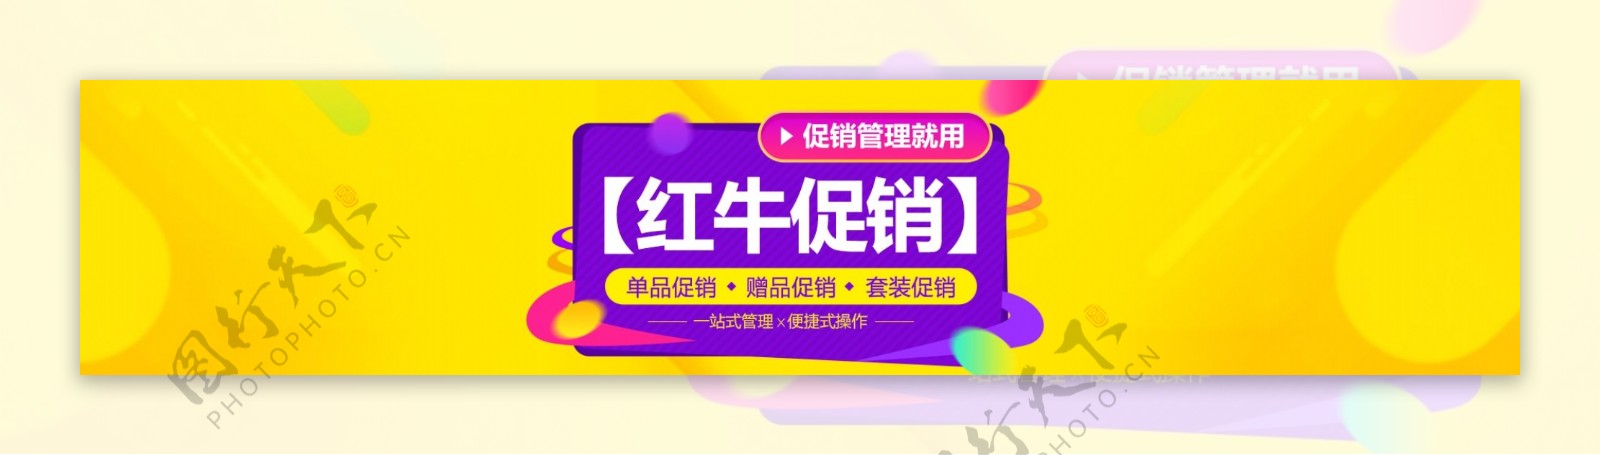 紫色软件功能促销海报banner